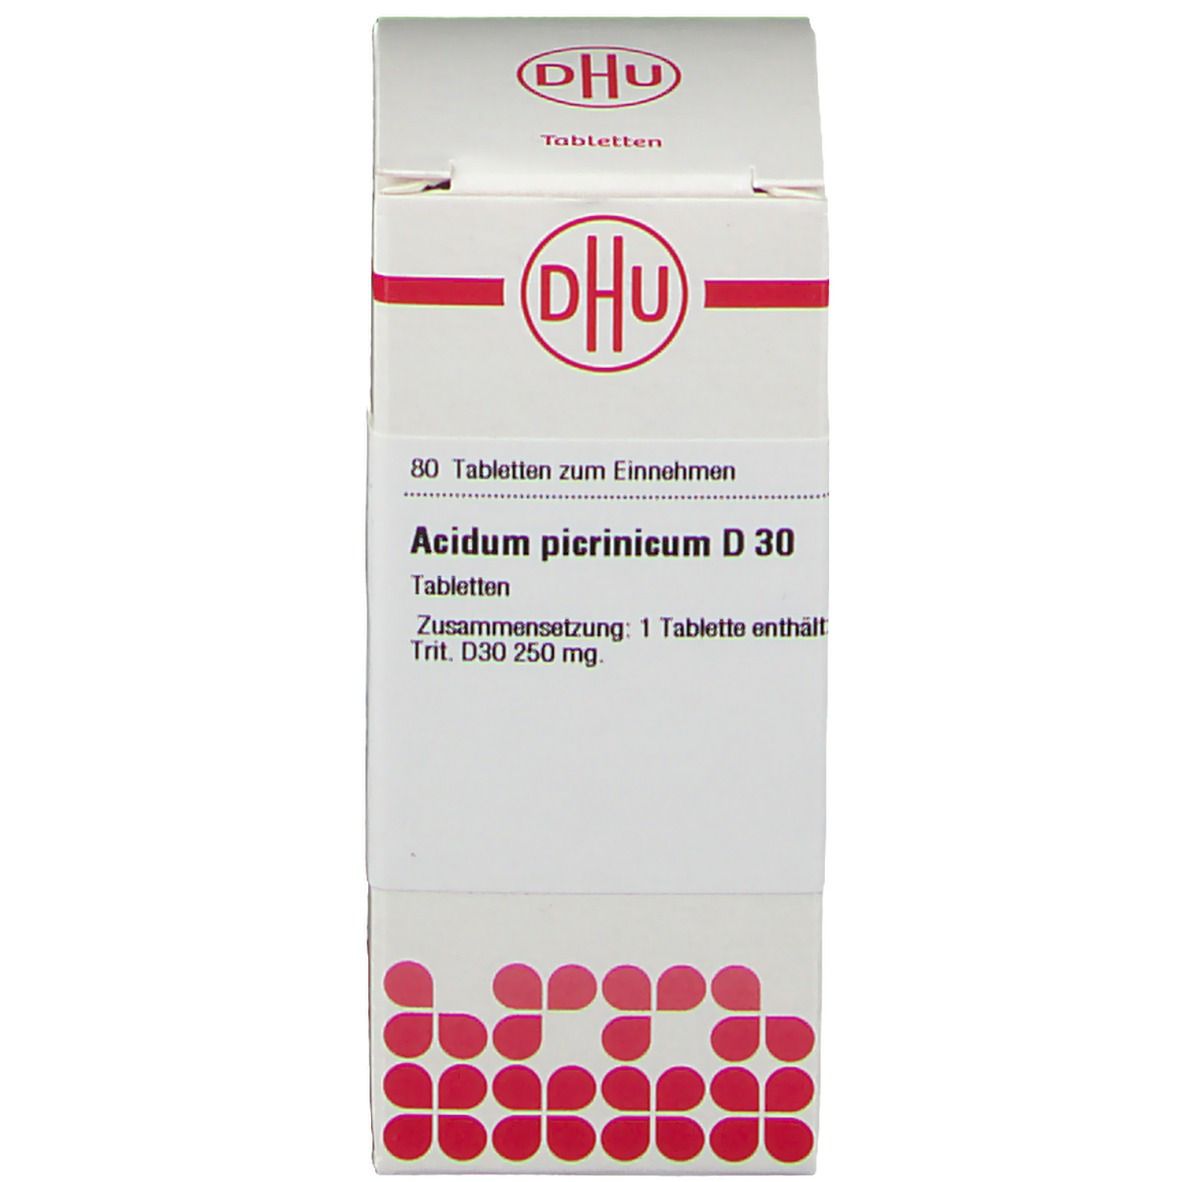 DHU Acidum Picrinicum D30